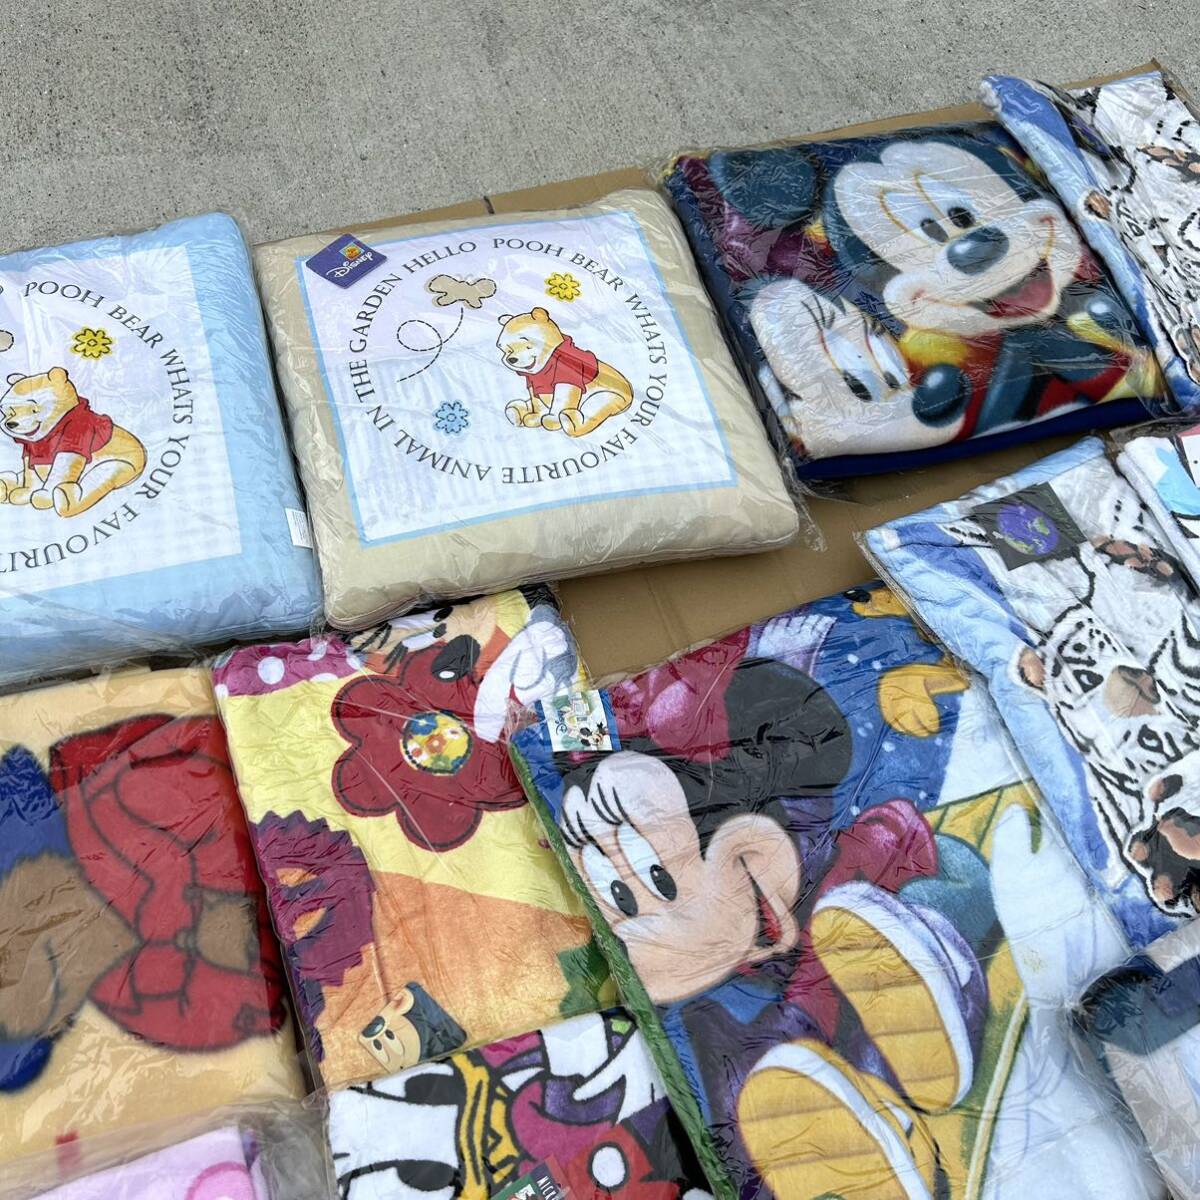 [ не использовался ] Disney / Doraemon / Snoopy / герой полотенце банное полотенце одеяло подушка много суммировать товары долгосрочного хранения (B3899)